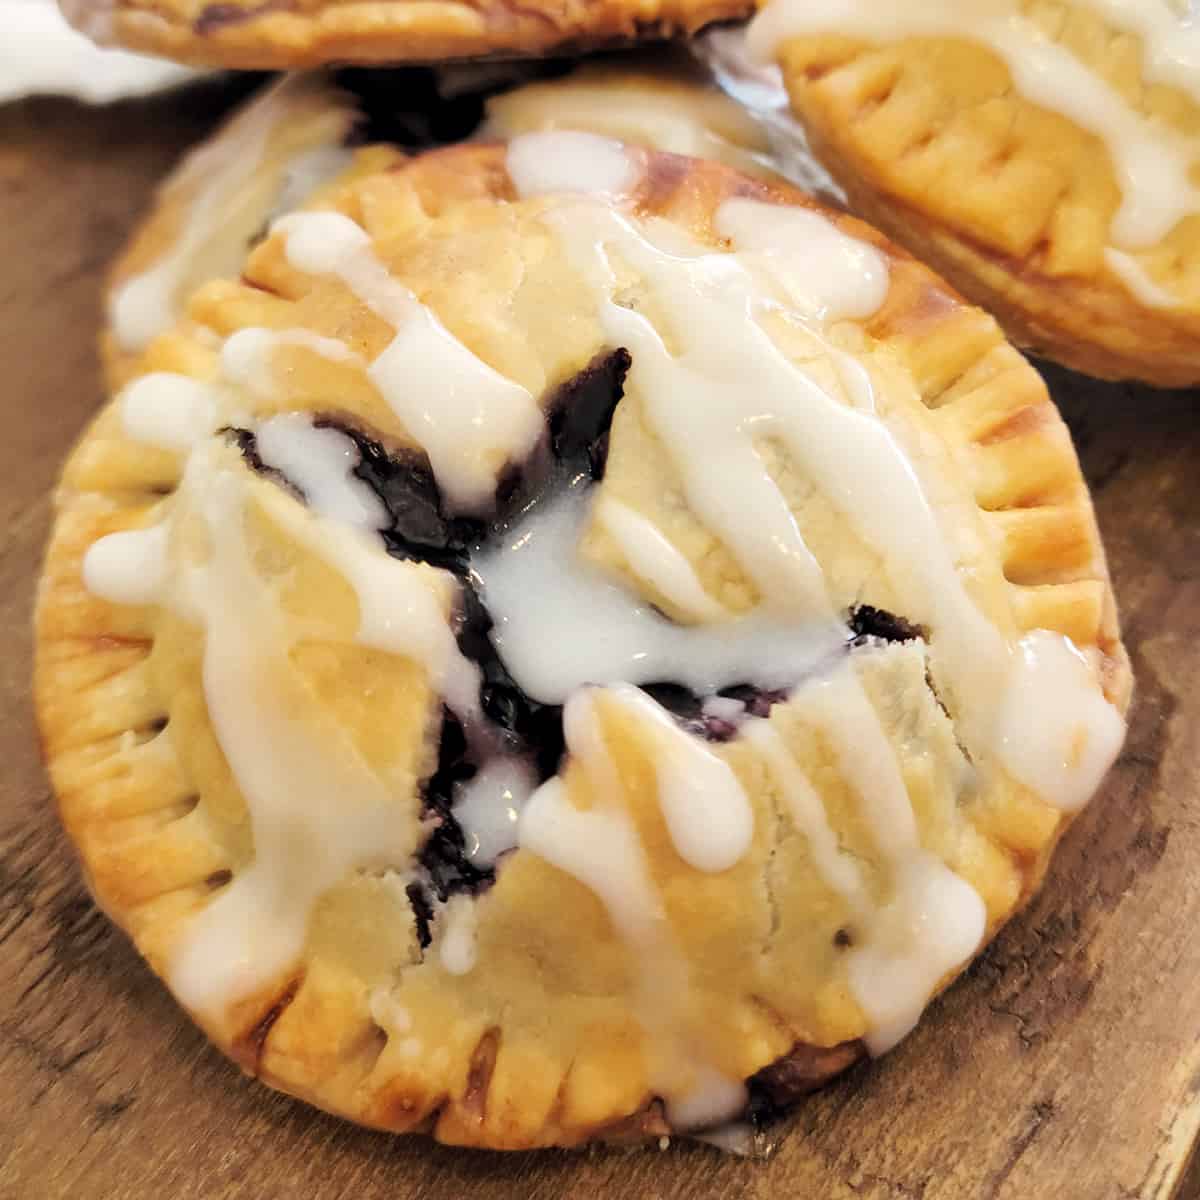 Blueberry Pie Cookies